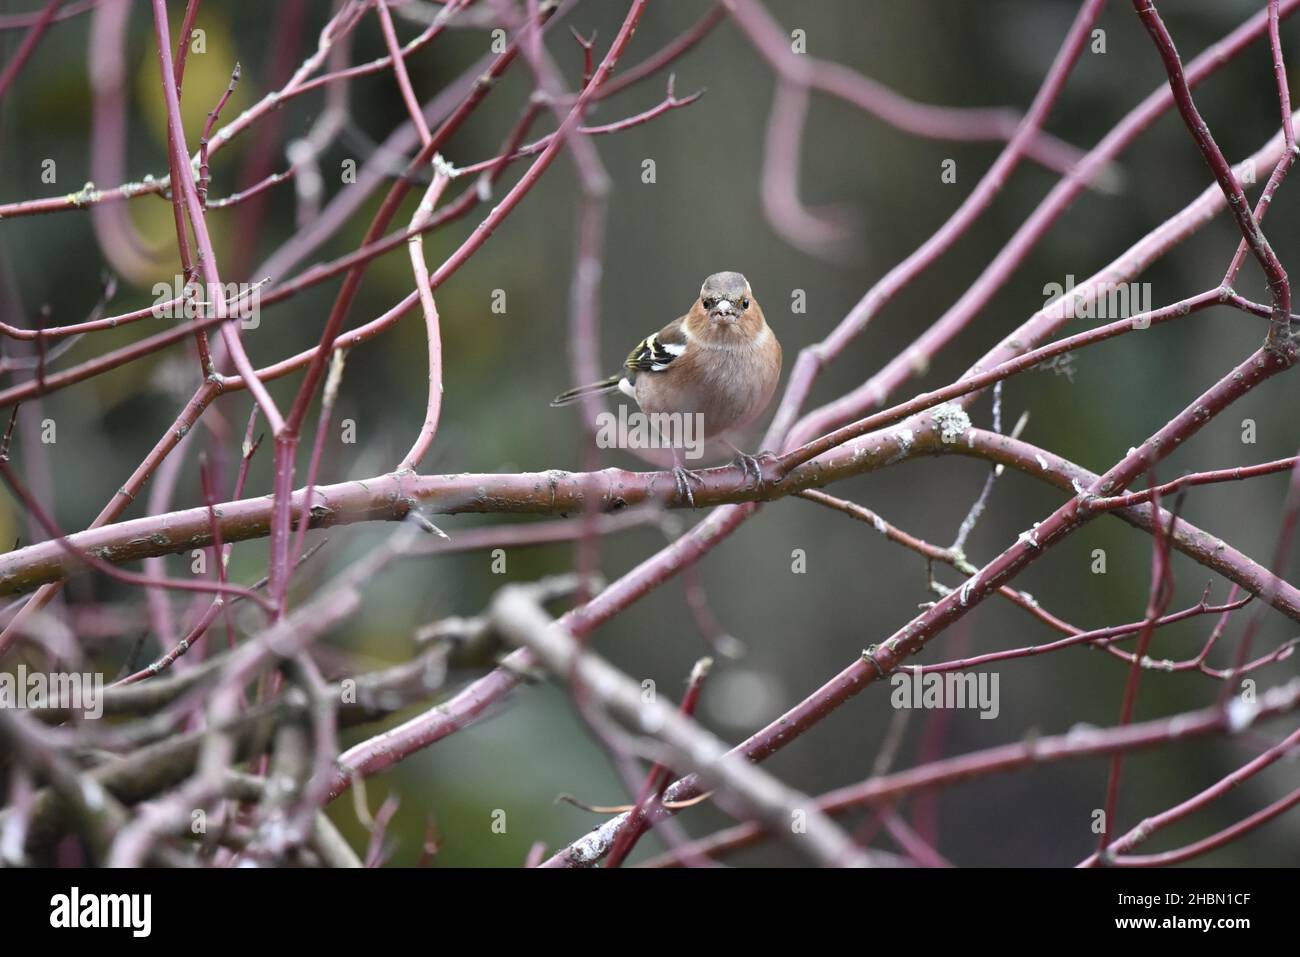 Bild eines männlichen Common Chaffinch (Fringilla coelebs), der auf einem horizontalen roten Dogwood-Zweig thront und der Kamera mit leicht geöffnetem Schnabel gegenübersteht, im November in Großbritannien Stockfoto